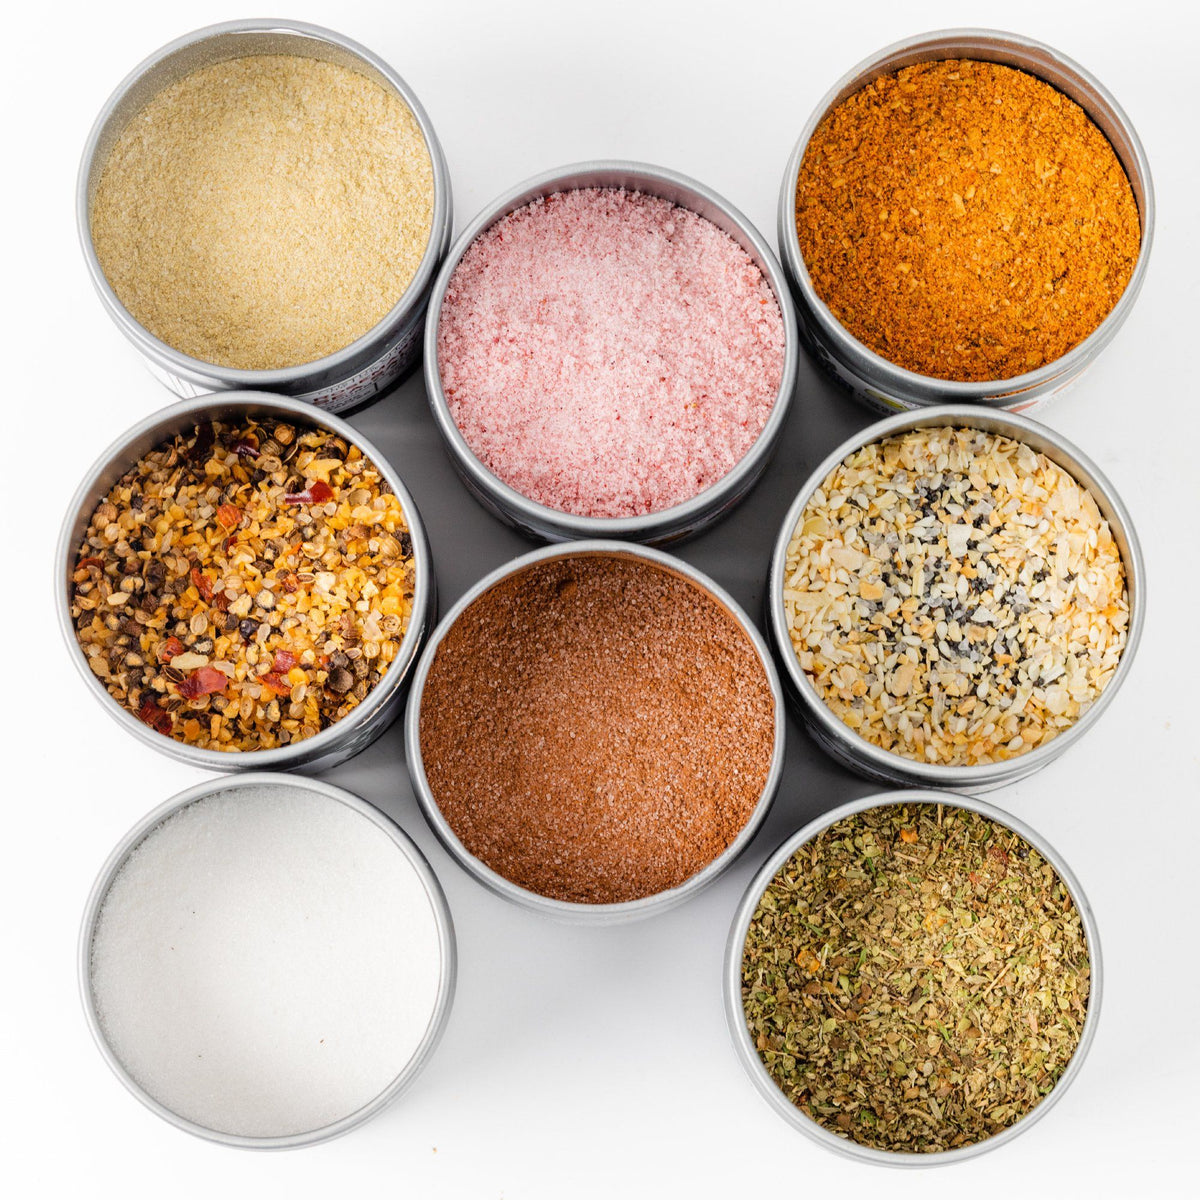 Gourmet Pantry Essentials Gift Pack | 8 Gourmet Seasonings & Salts In A Handsome Gift Tin by Gustus Vitae